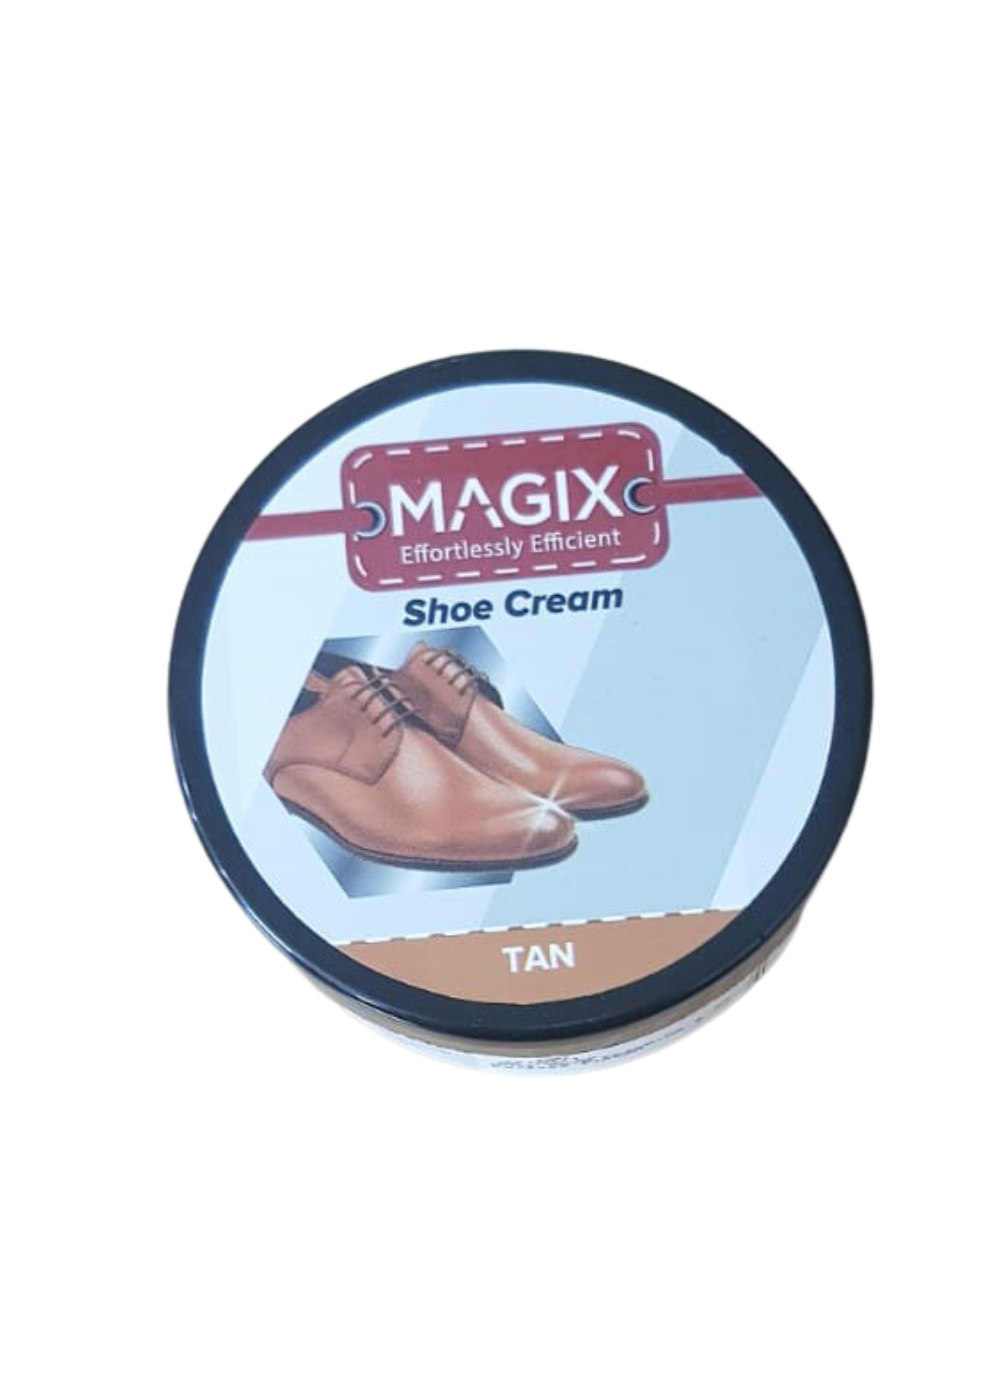 MAGIX Shoe Cream